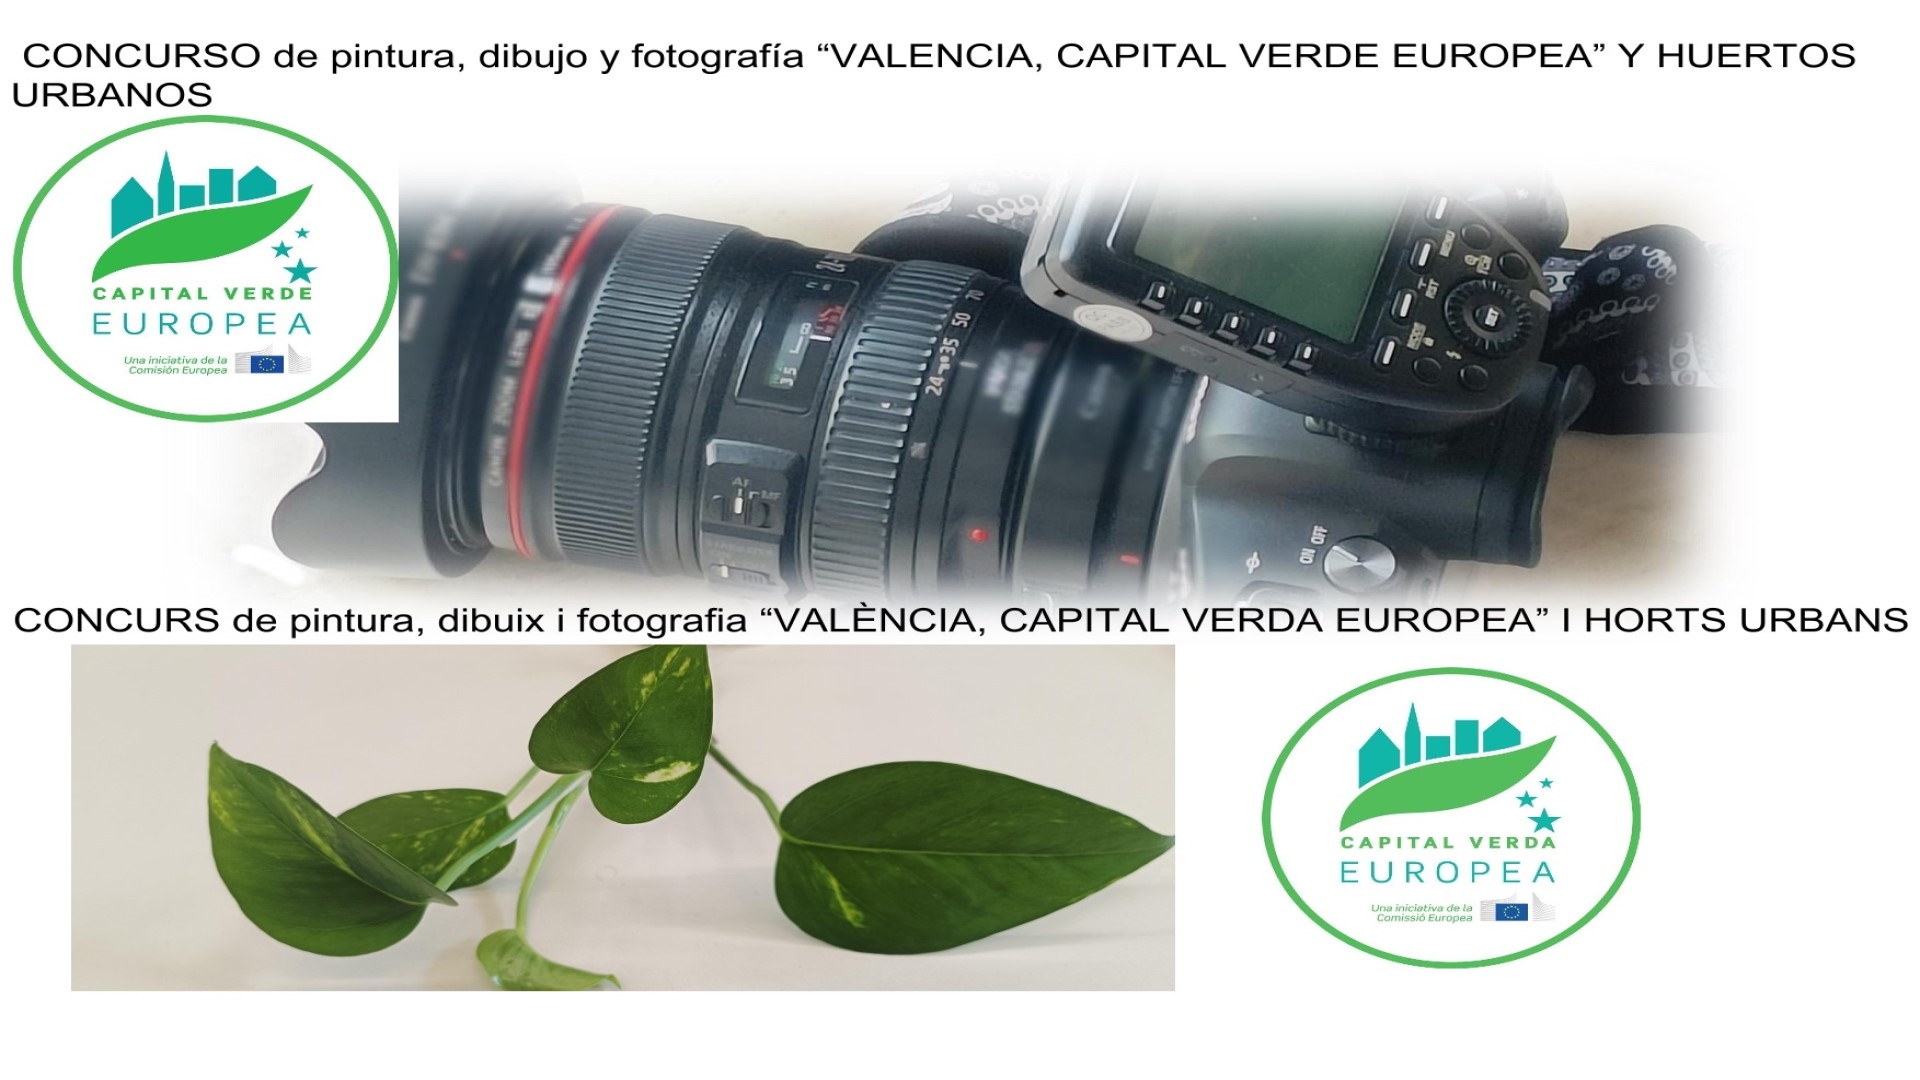 Concurs València, Capital Verda Europea i horts urbans